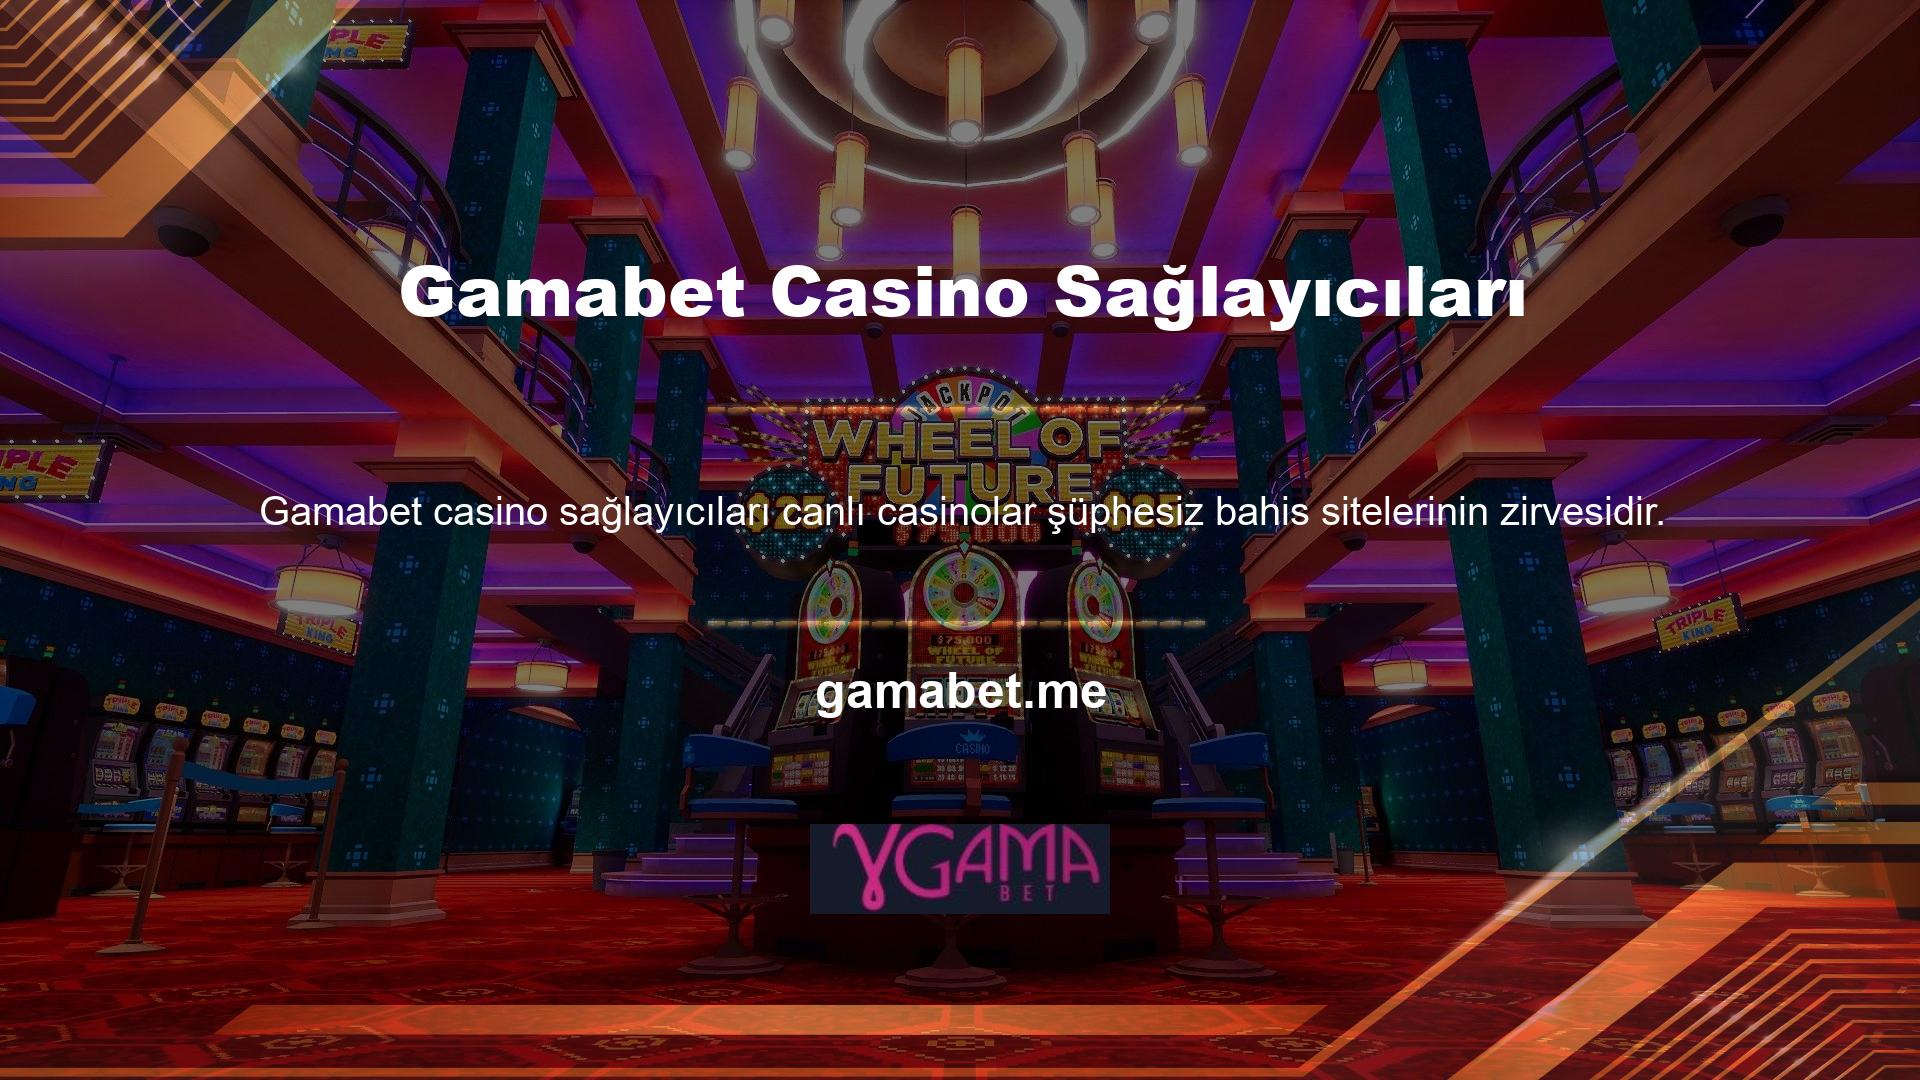 Canlı casino sitesinin kalitesi, bahis sitesinin kalitesinin belirlenmesinde büyük rol oynar